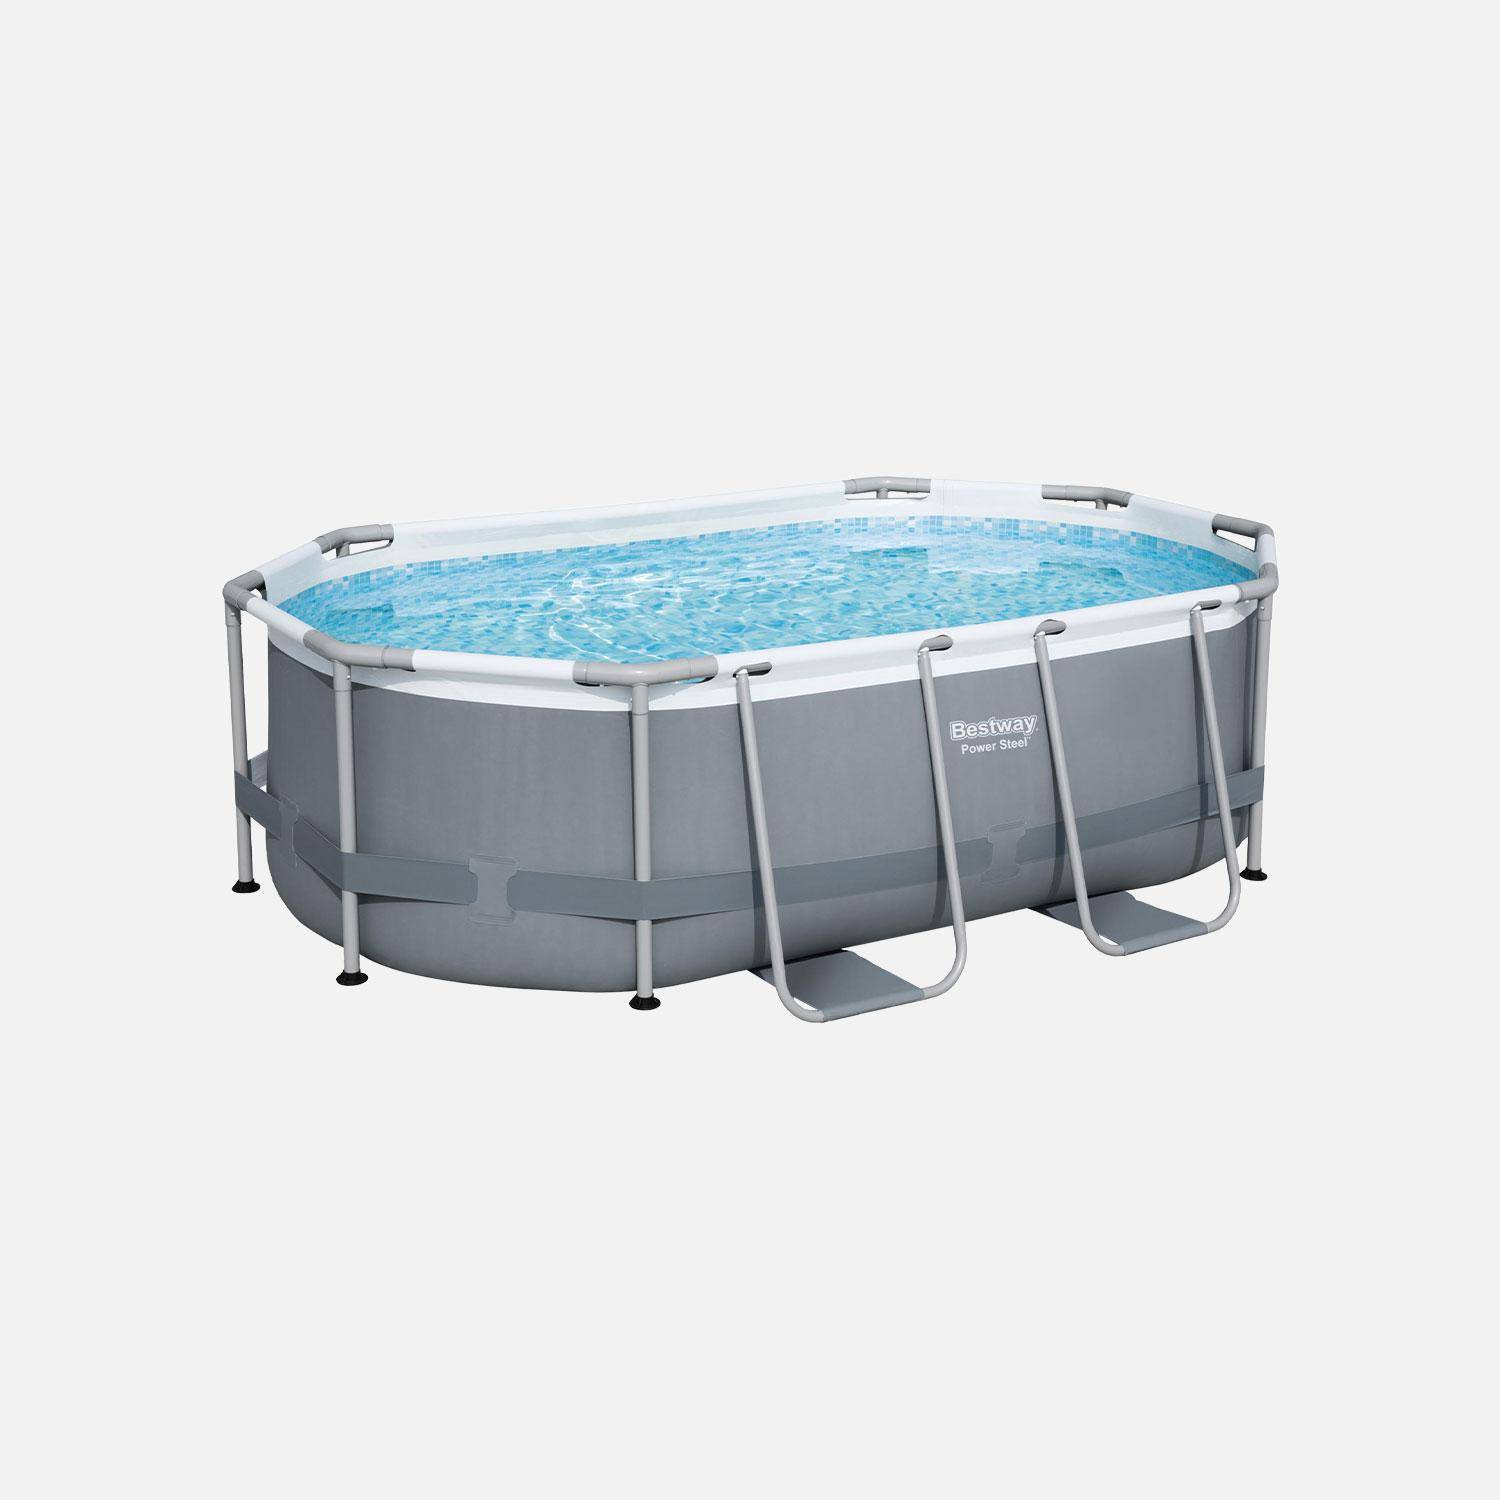 Compleet BESTWAY zwembad – Spinelle grijs – Ovaal frame zwembad 3x2 m, inclusief filterpomp en reparatieset  Photo2